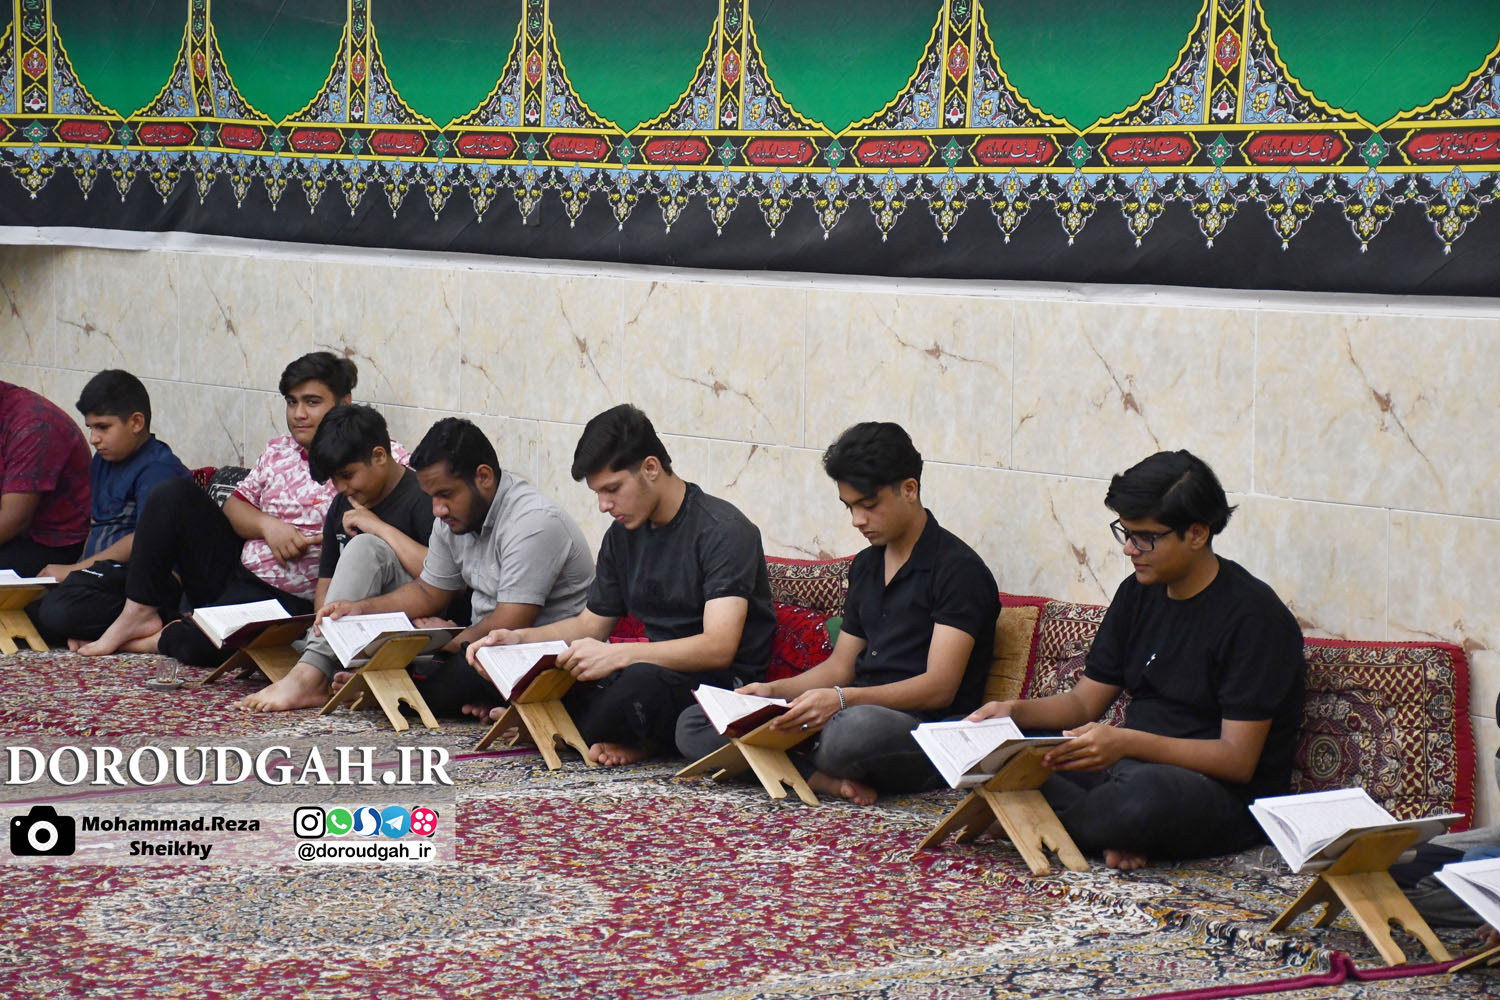 تصاویری از محافل قرآن خوانی دورودگاه در ماه مبارک رمضان 